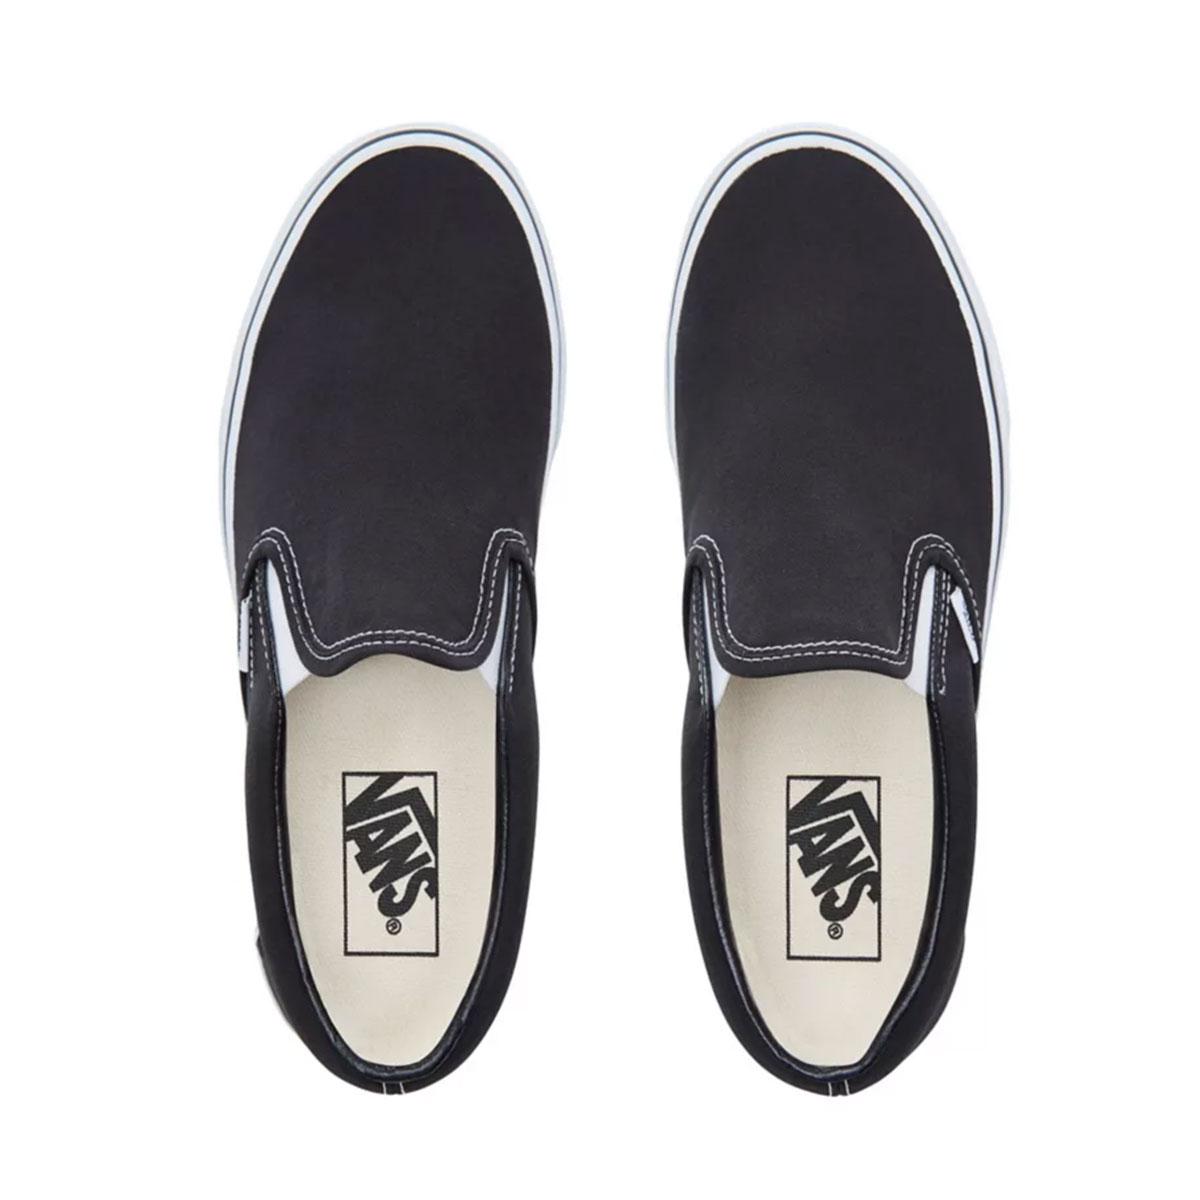 Vans Classic Slip-On Skate Shoes, Black